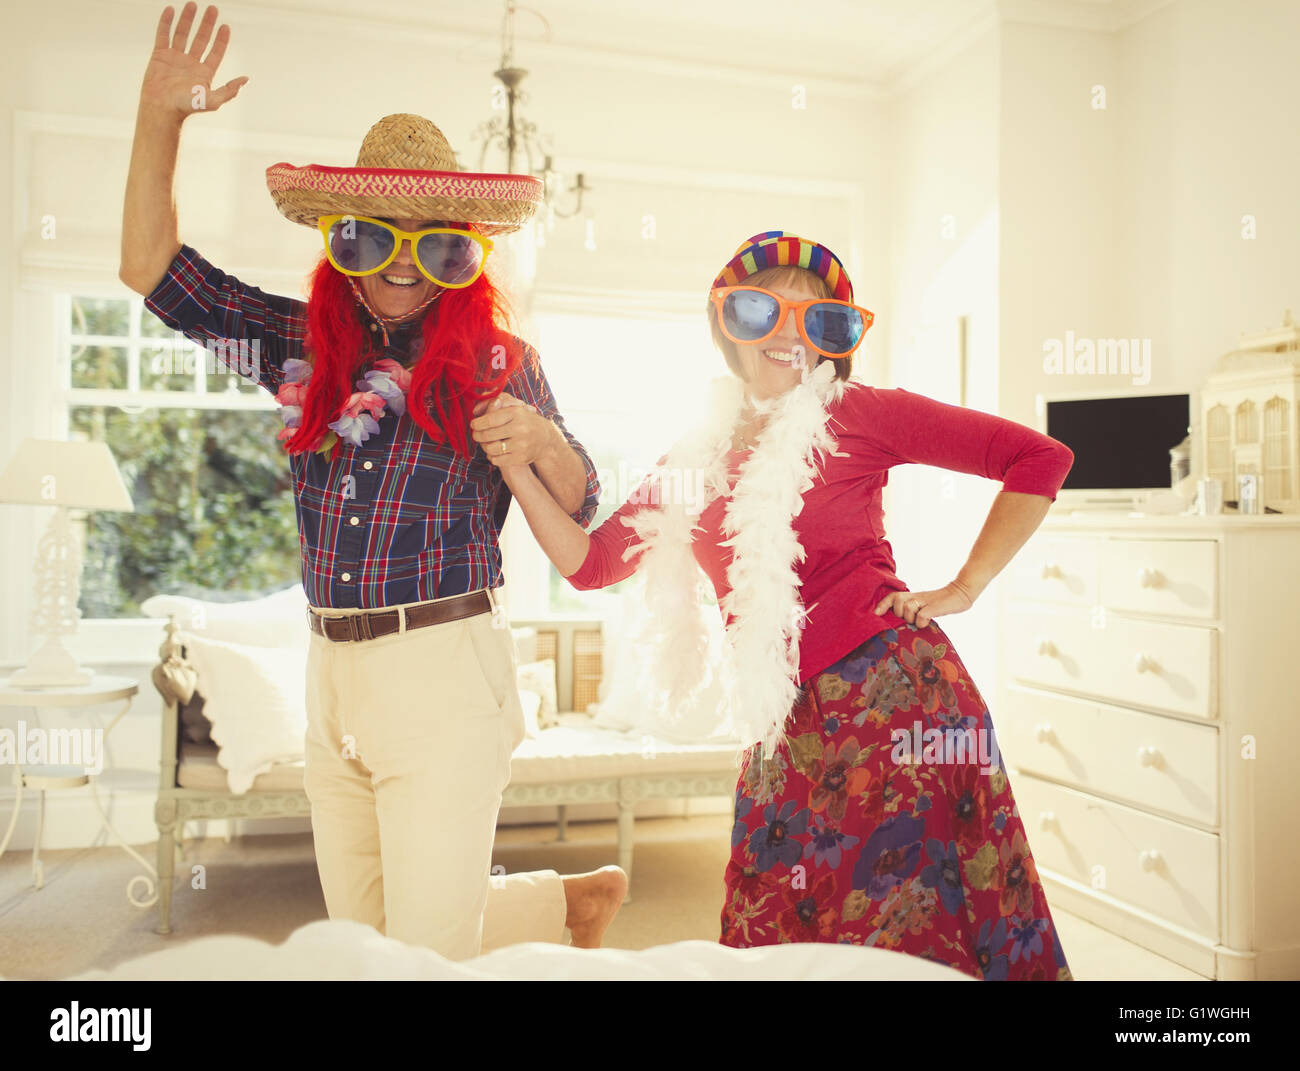 Porträt dumme älteres Paar in Kostümen tanzen Stockfoto